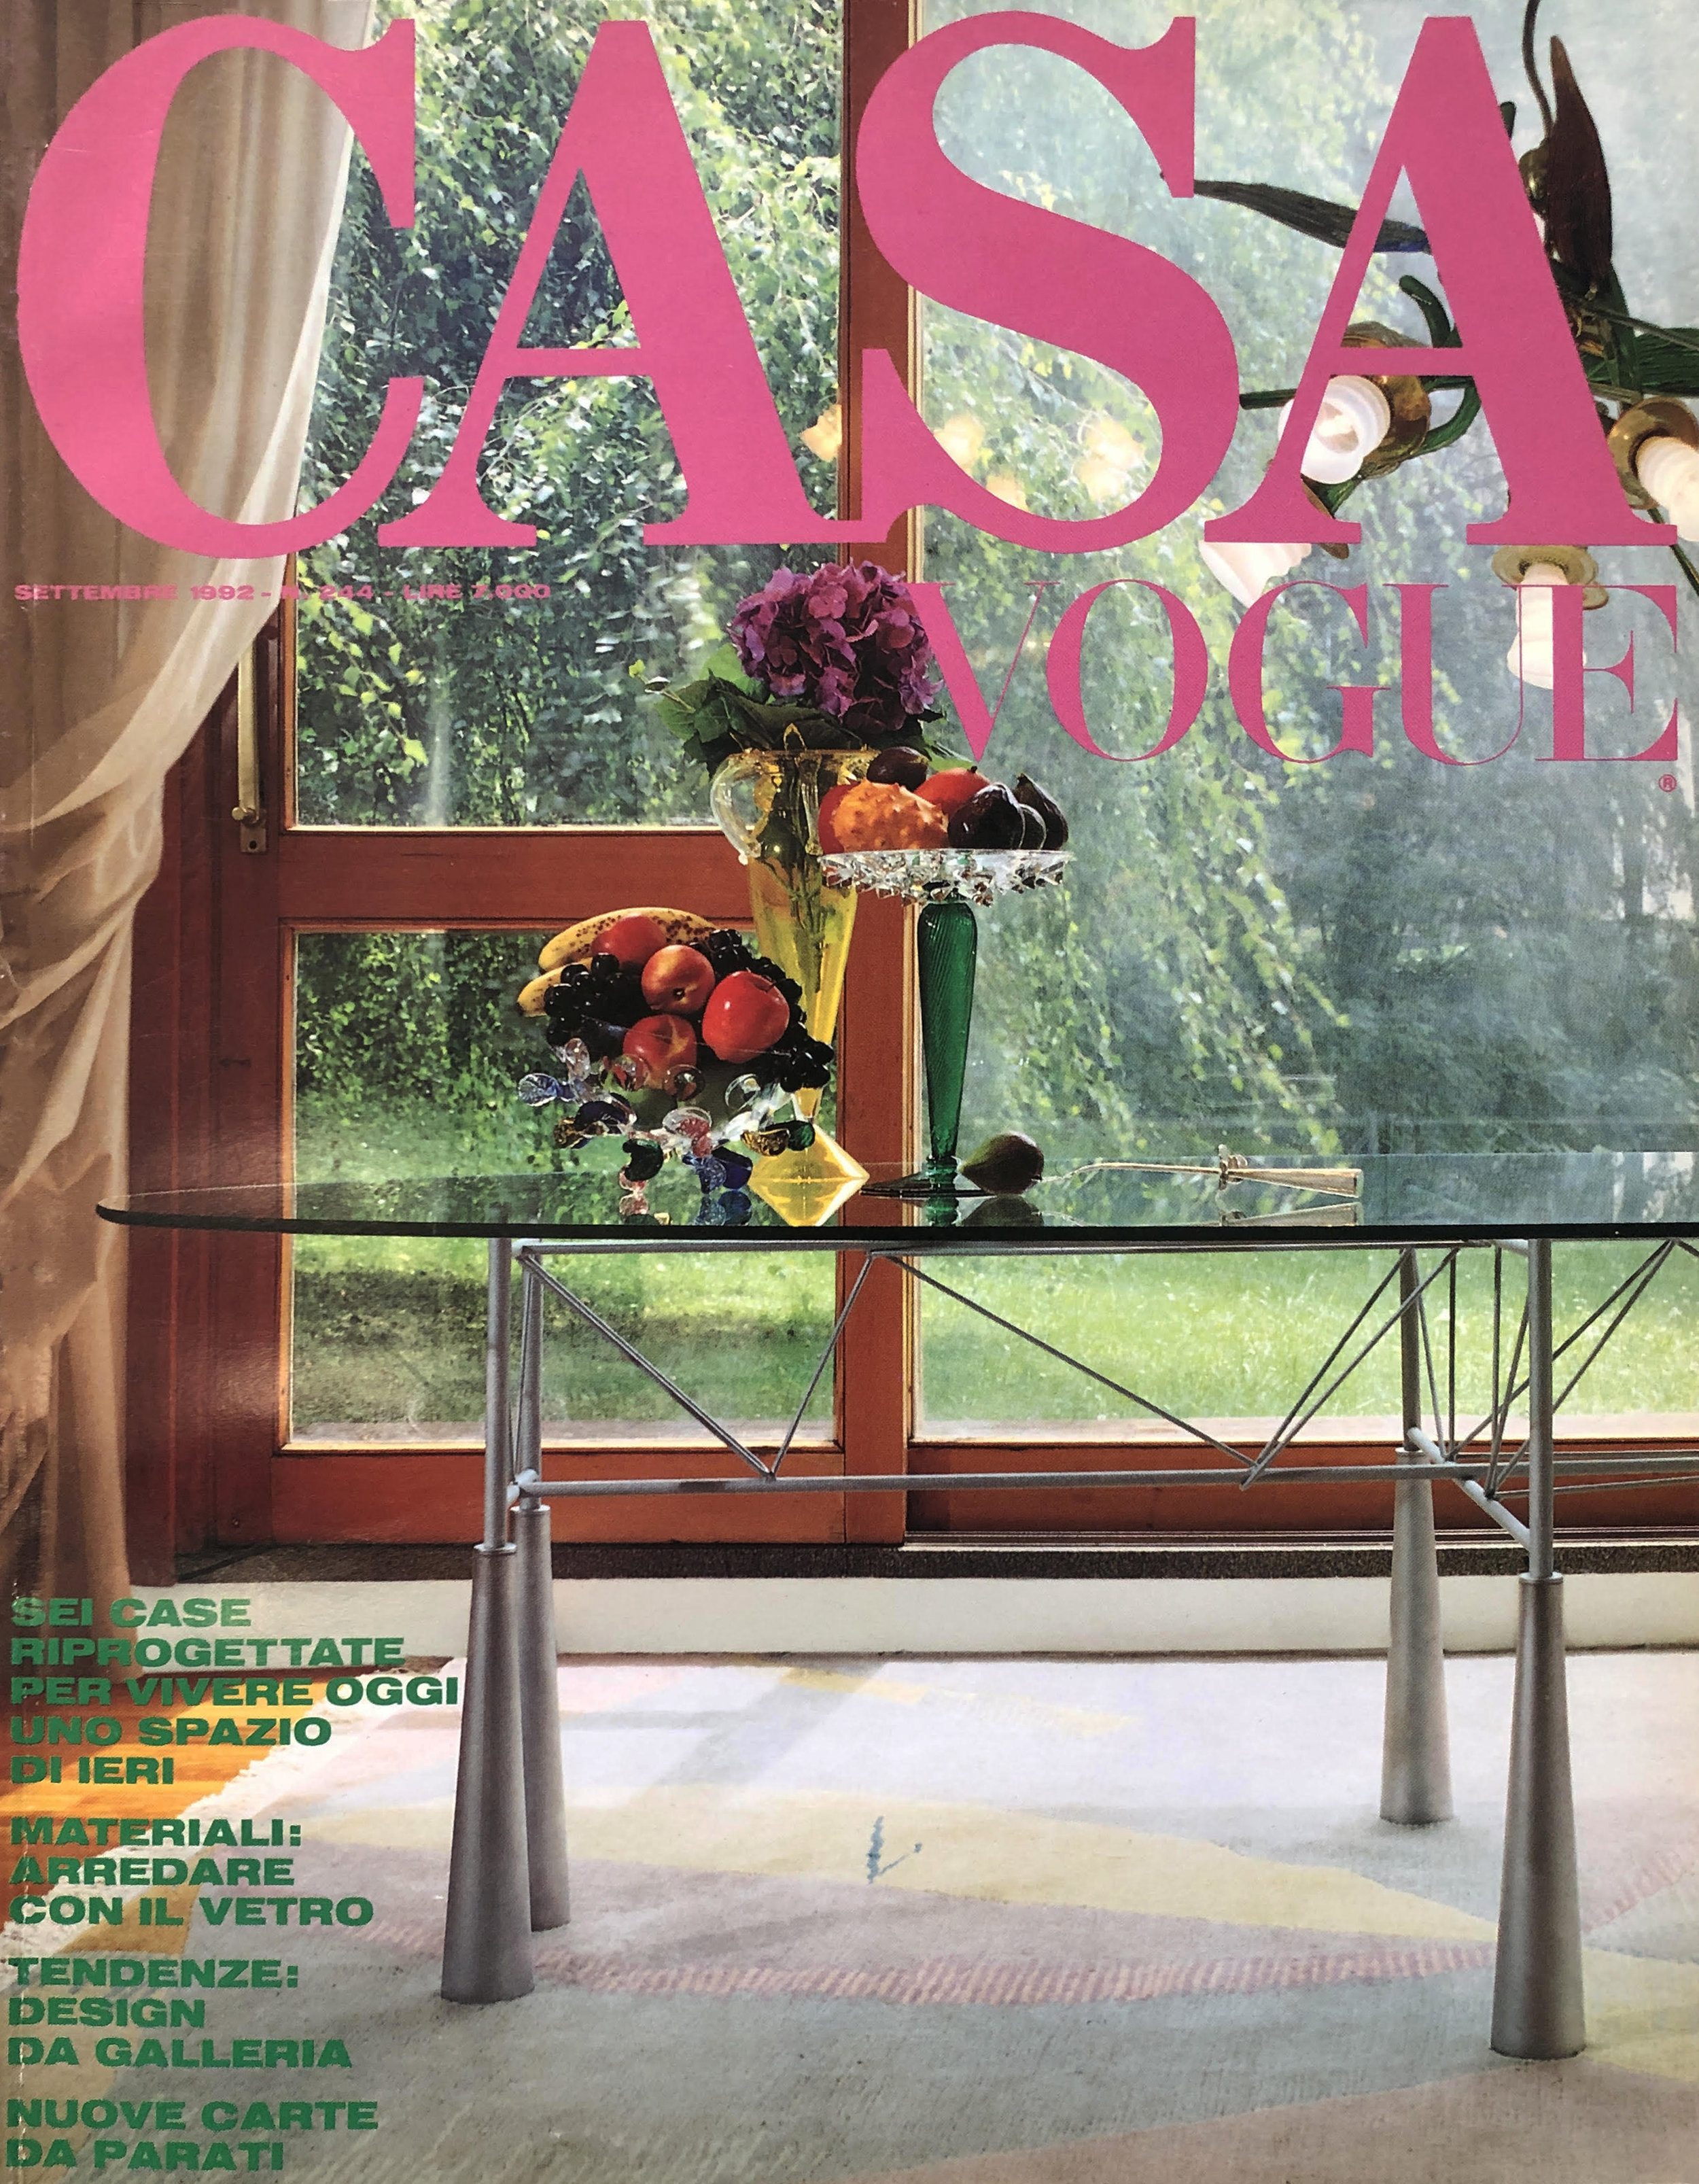 Casa Vogue Magazine cover